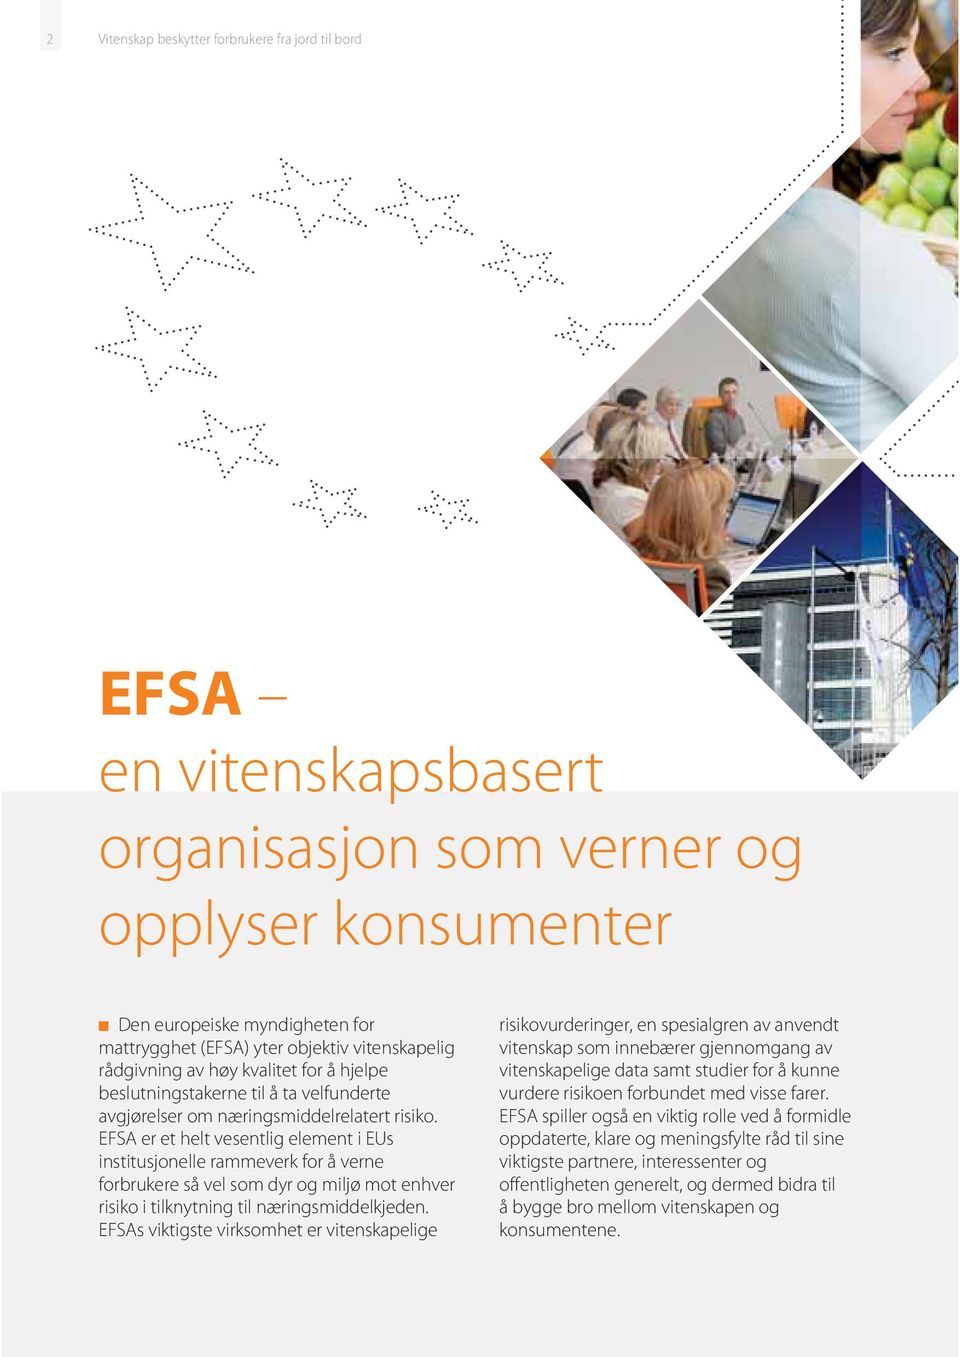 EFSA er et helt vesentlig element i EUs institusjonelle rammeverk for å verne forbrukere så vel som dyr og miljø mot enhver risiko i tilknytning til næringsmiddelkjeden.